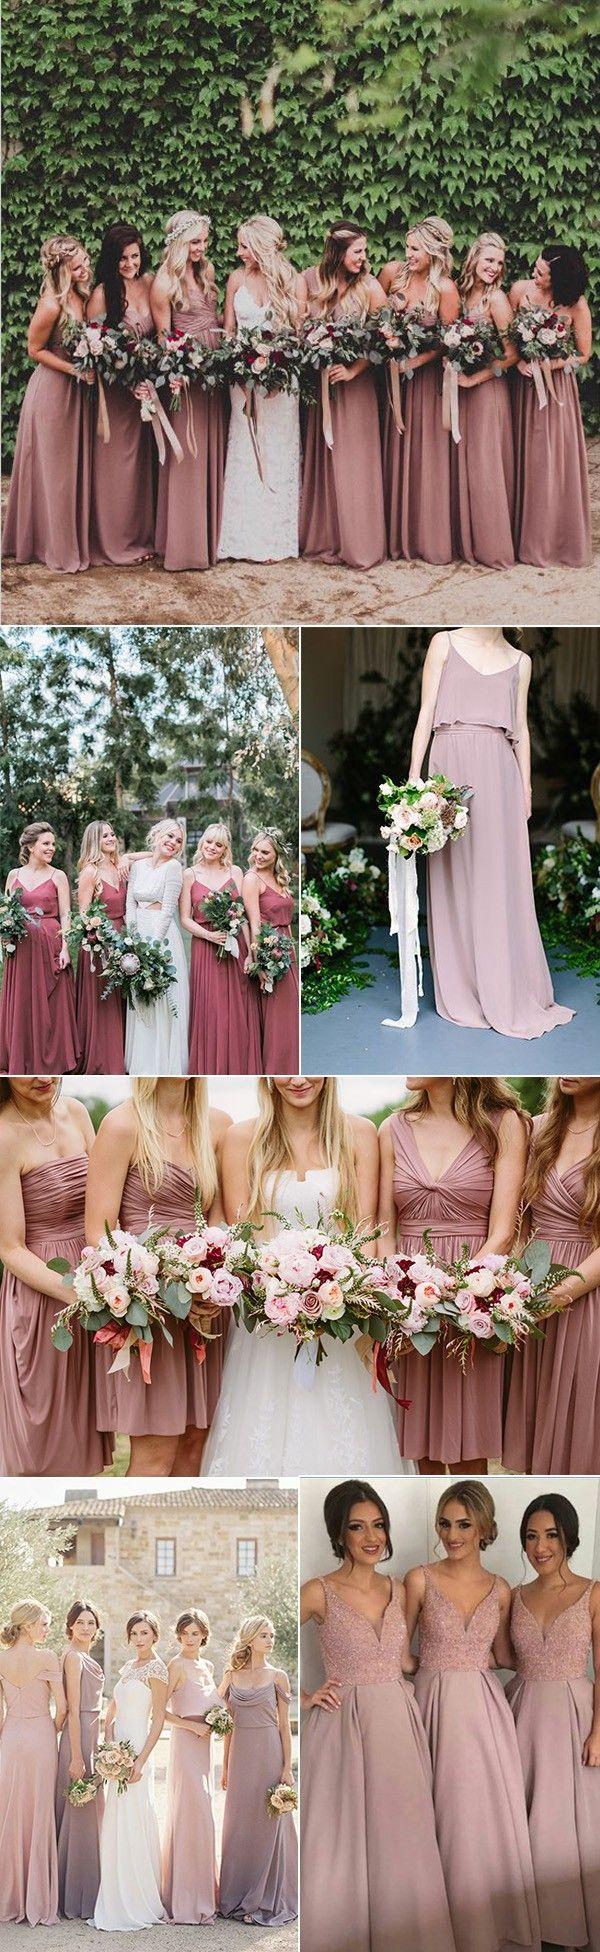 زفاف - Trending-24 Dusty Rose Wedding Color Ideas For 2017